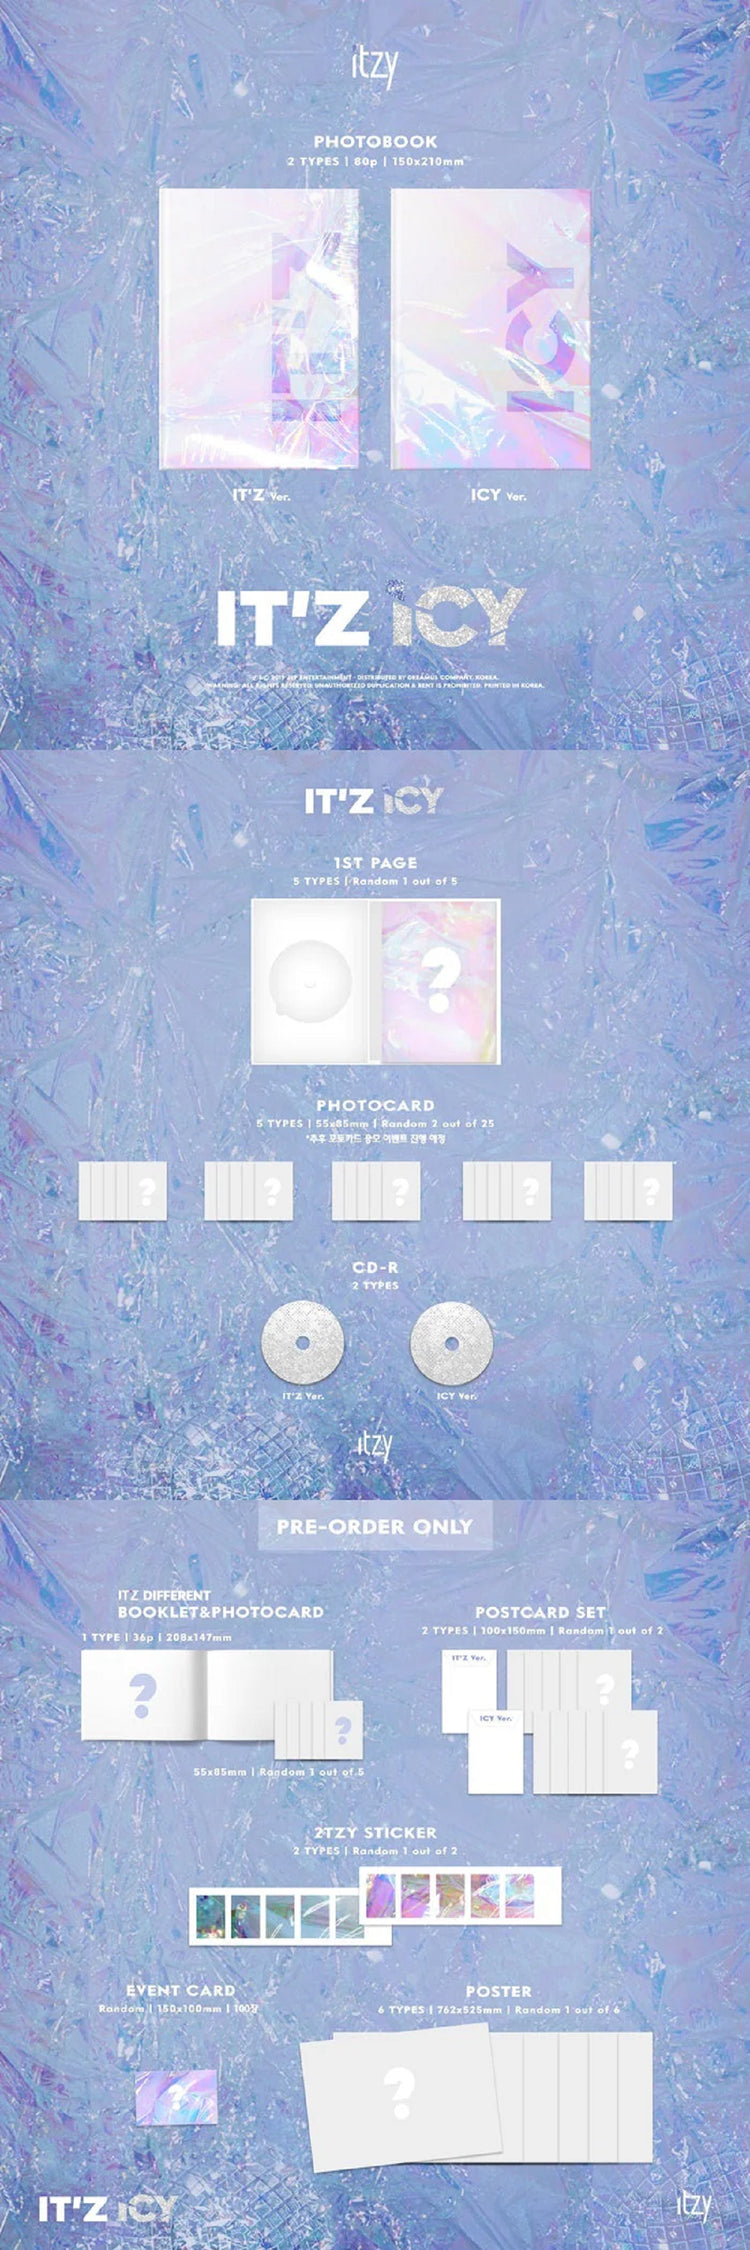 itzy-itz-icy-album-2-version-set-contents